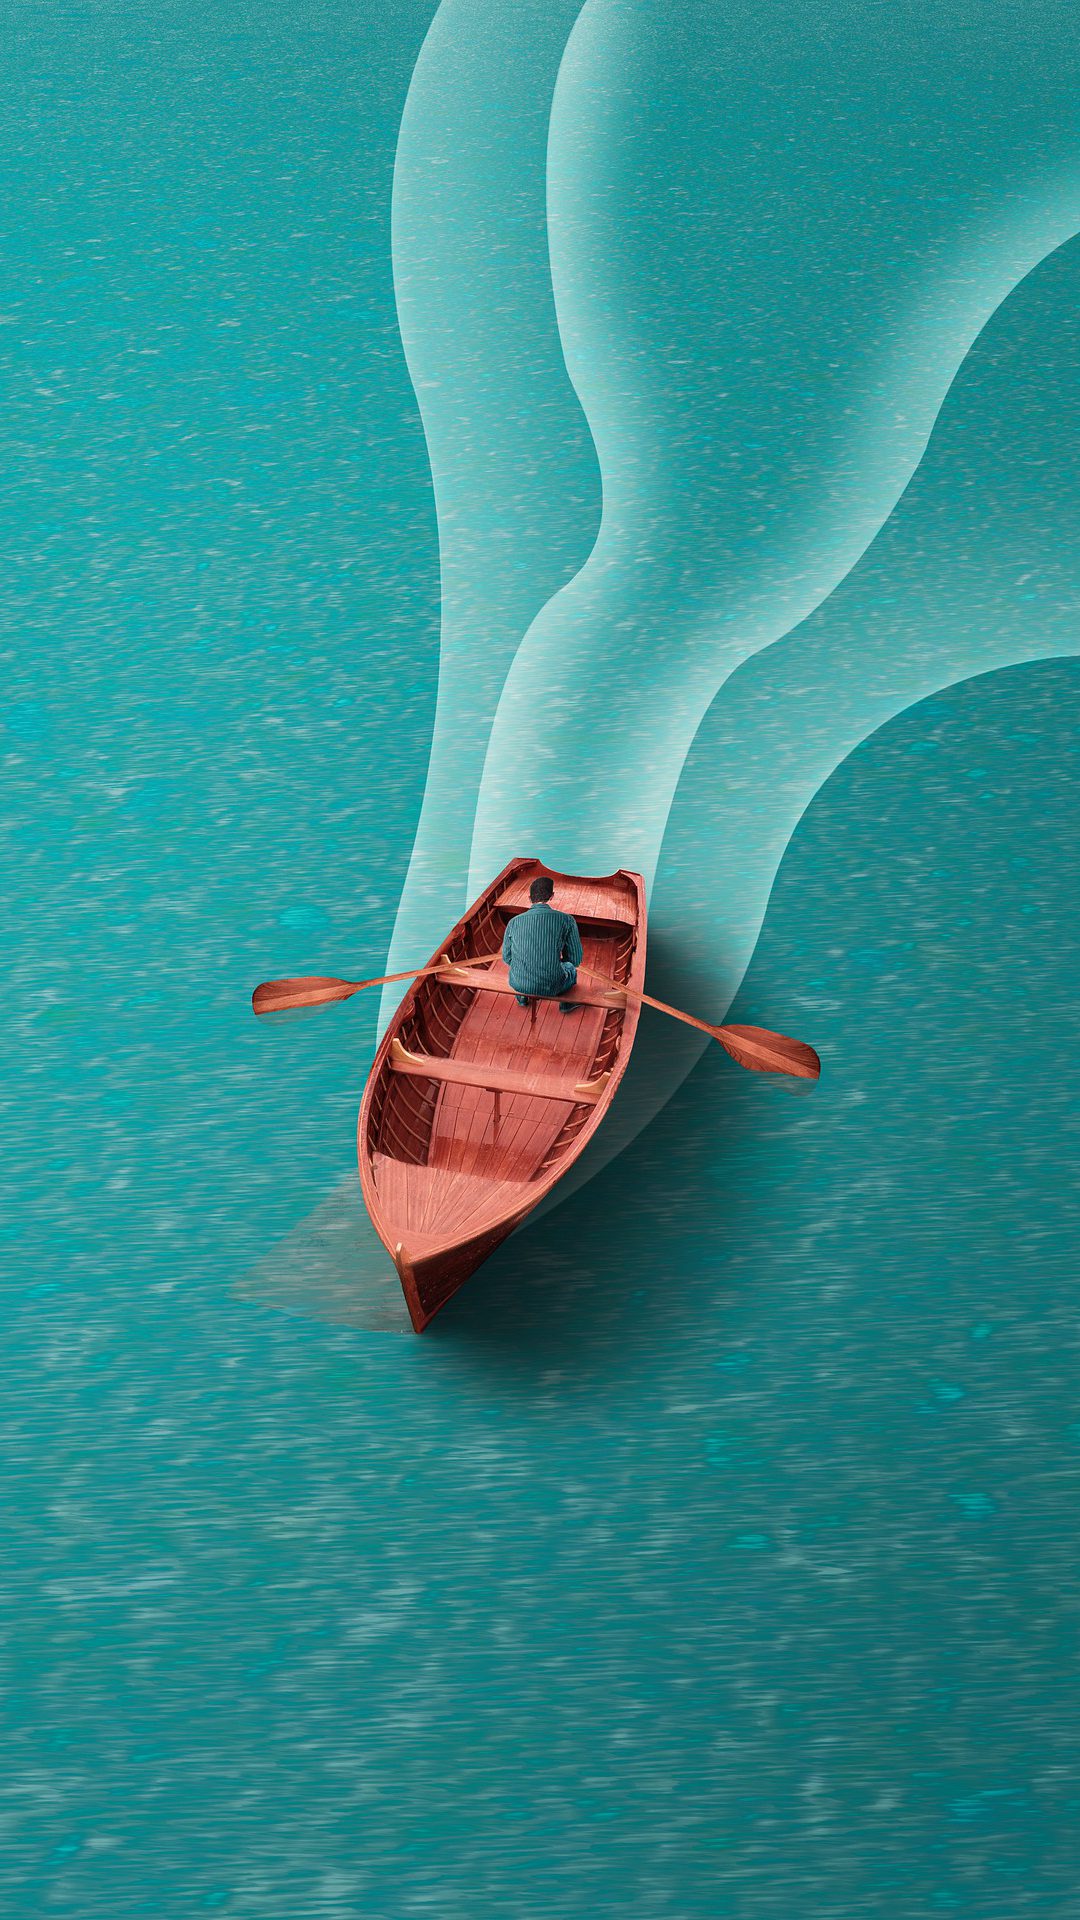 一个<span style='color:red;'>划船</span>的男子非主流插画手机壁纸图片 平静蔚蓝的湖面